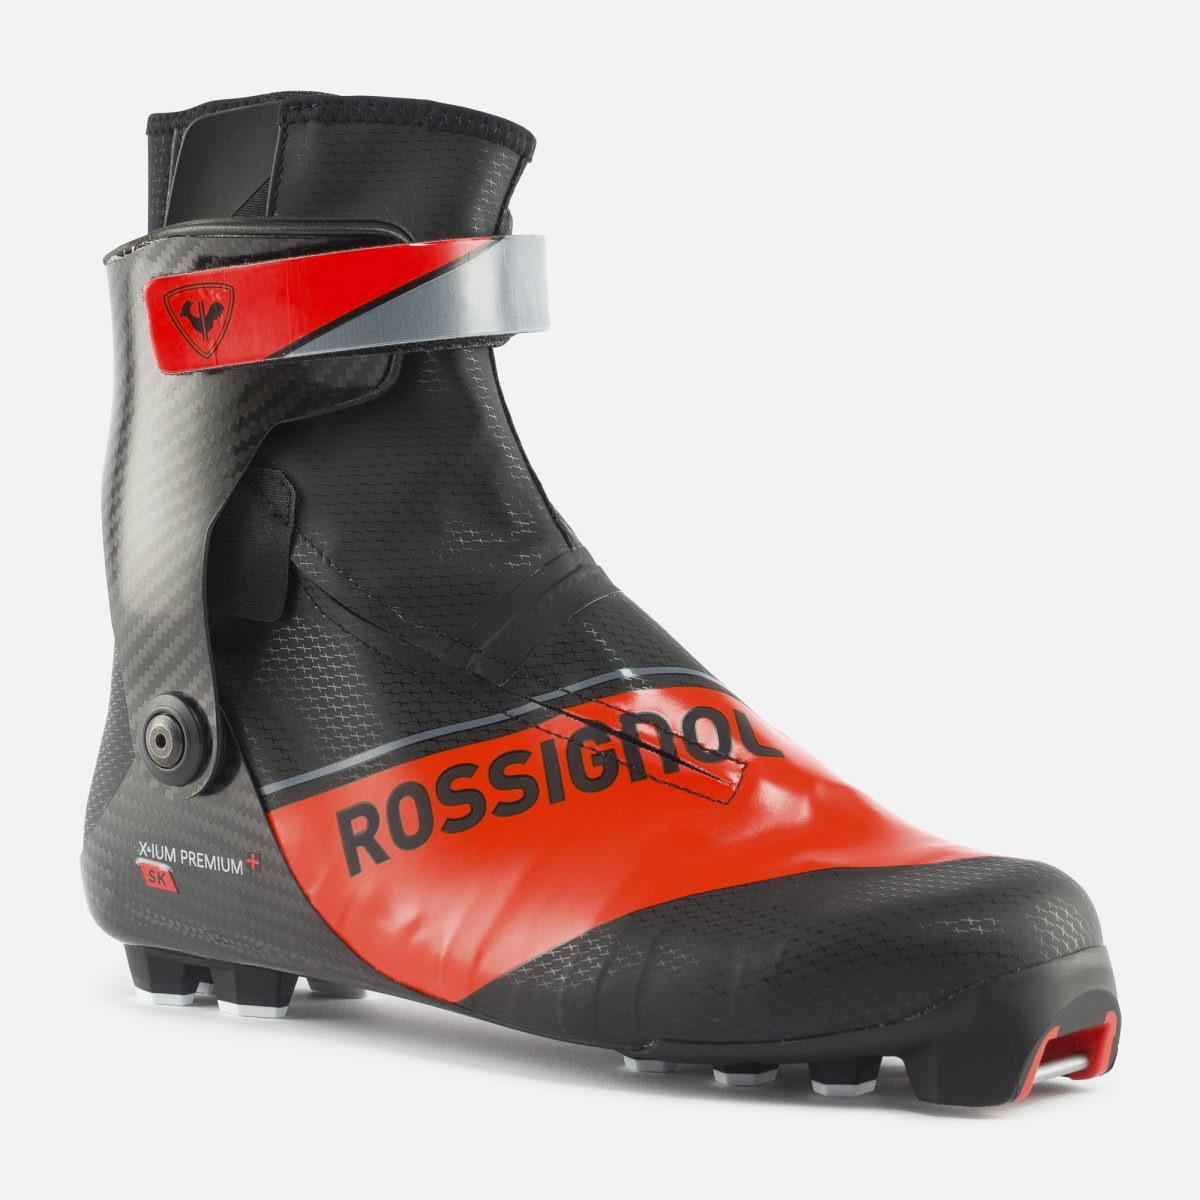 ROSSIGNOL Chaussures X-IUM Carbon PREMIUM+ Skate Spirale 